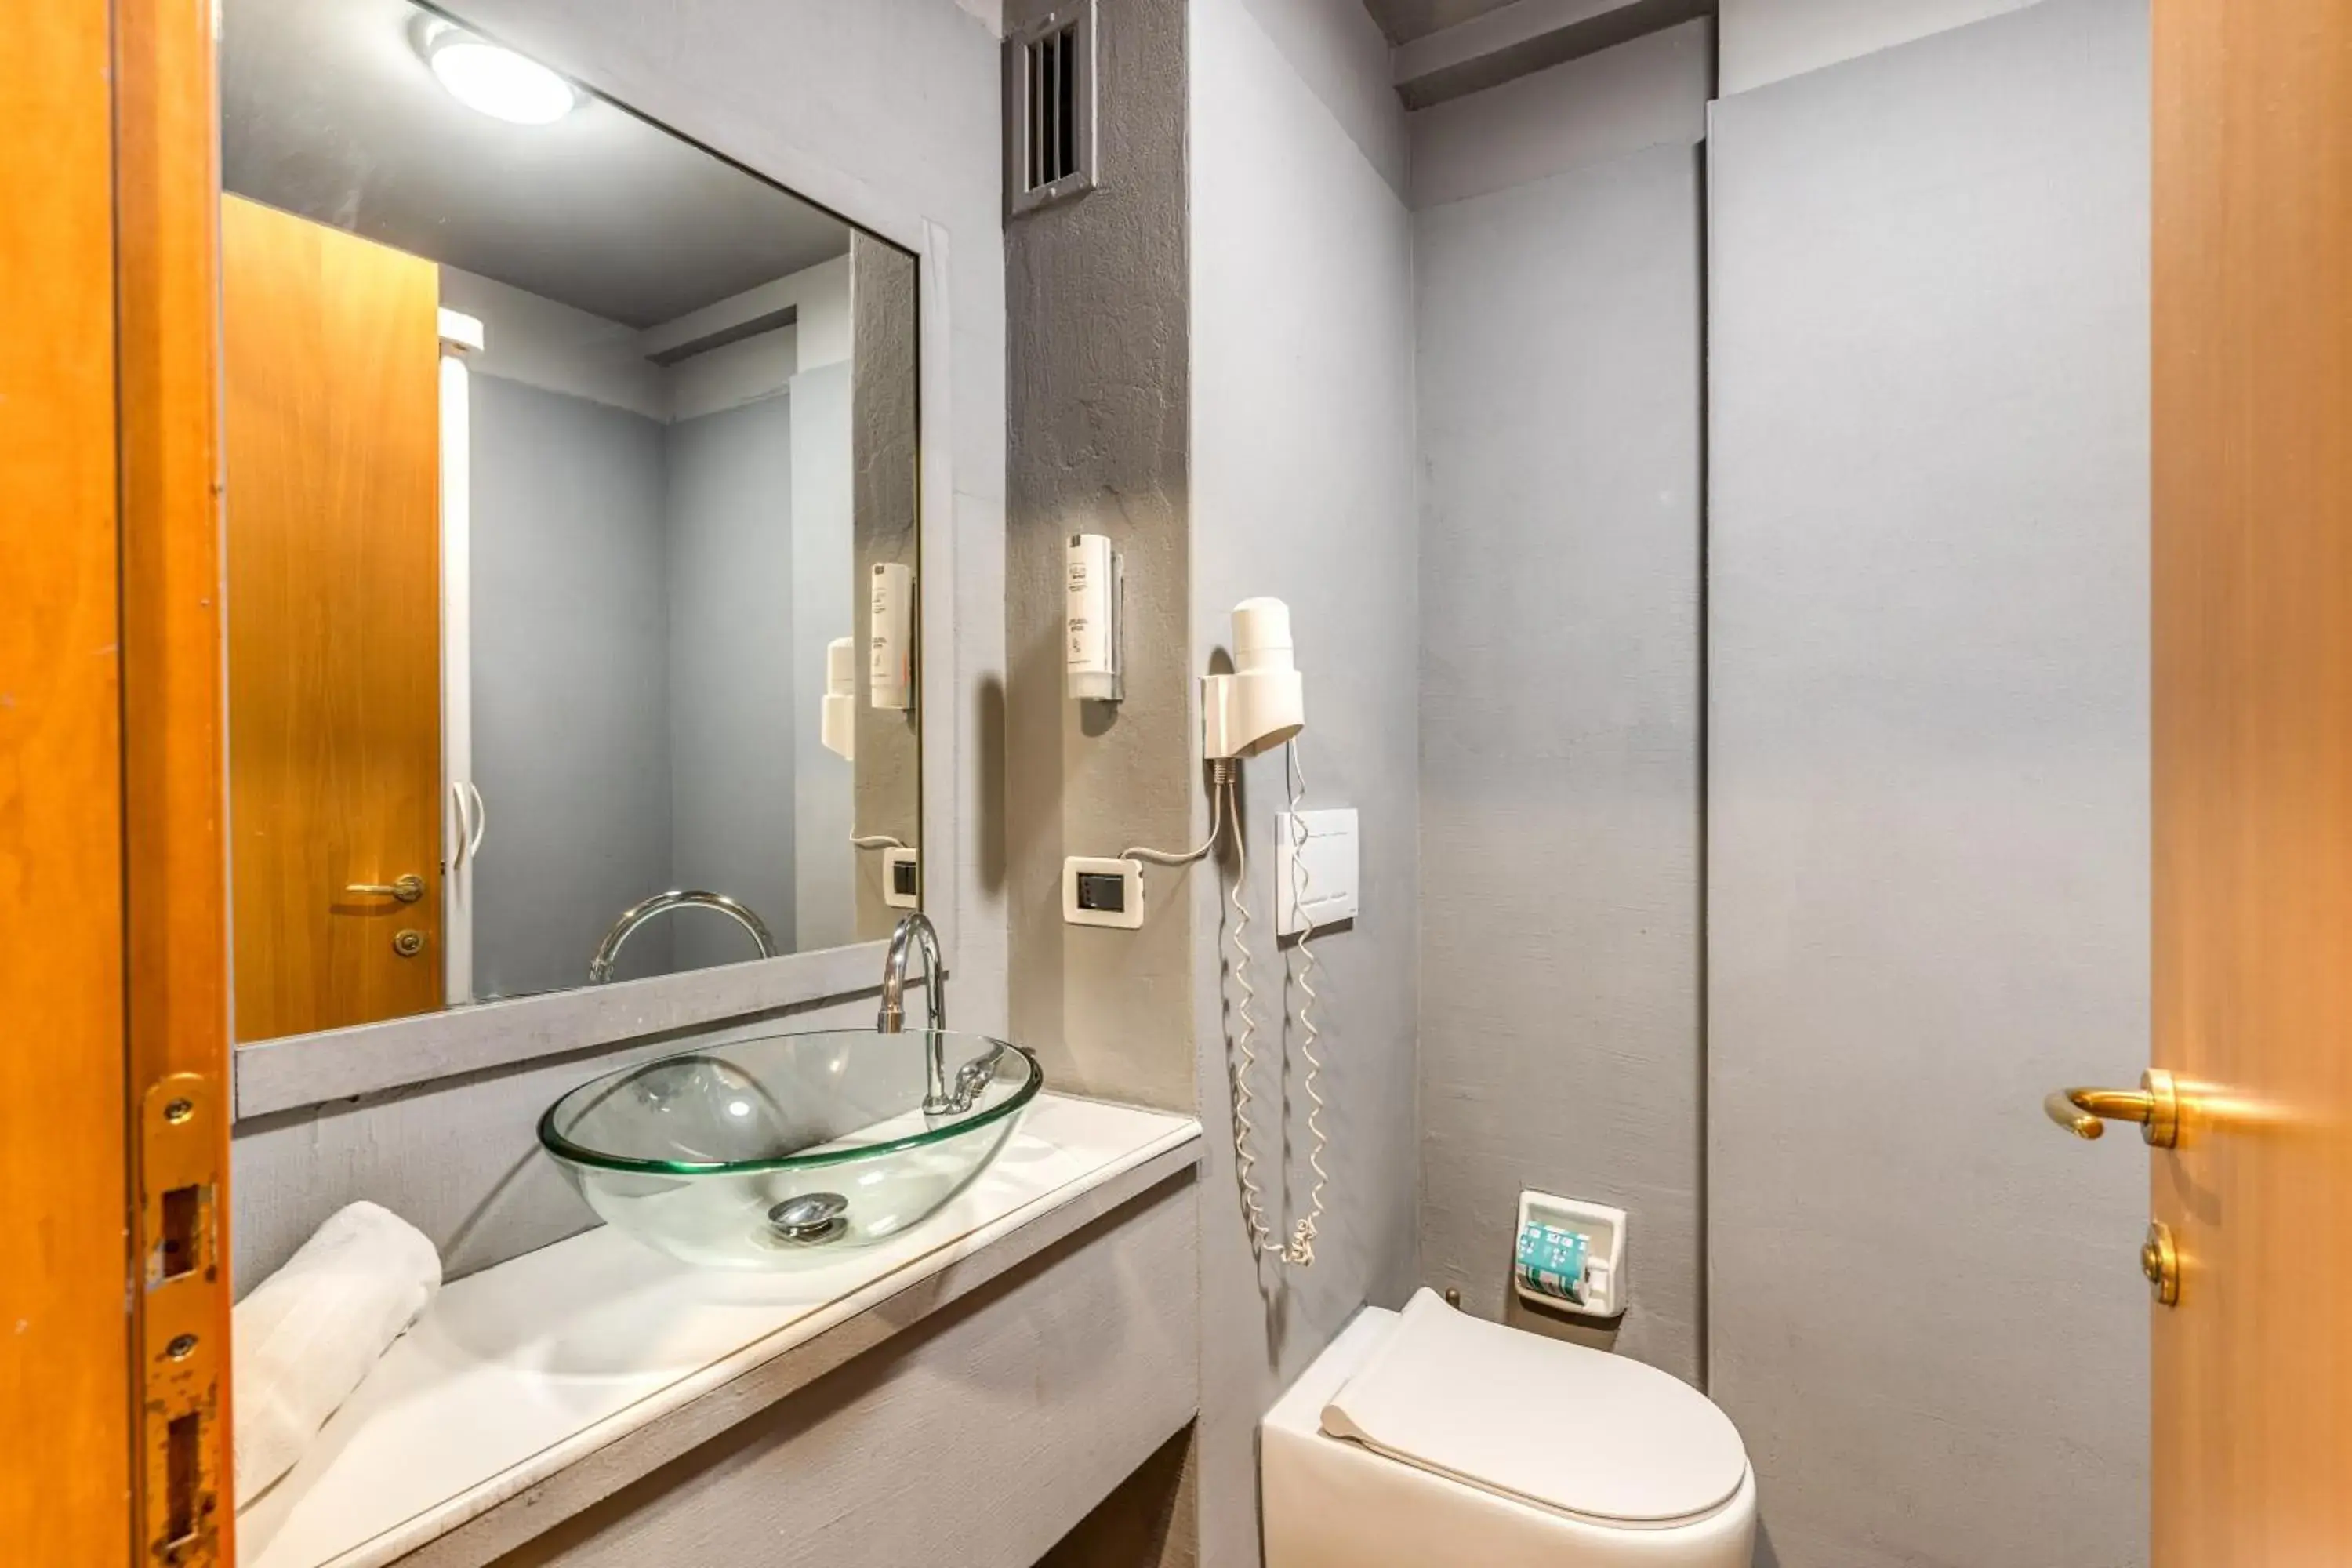 Toilet, Bathroom in Scheppers Hotel